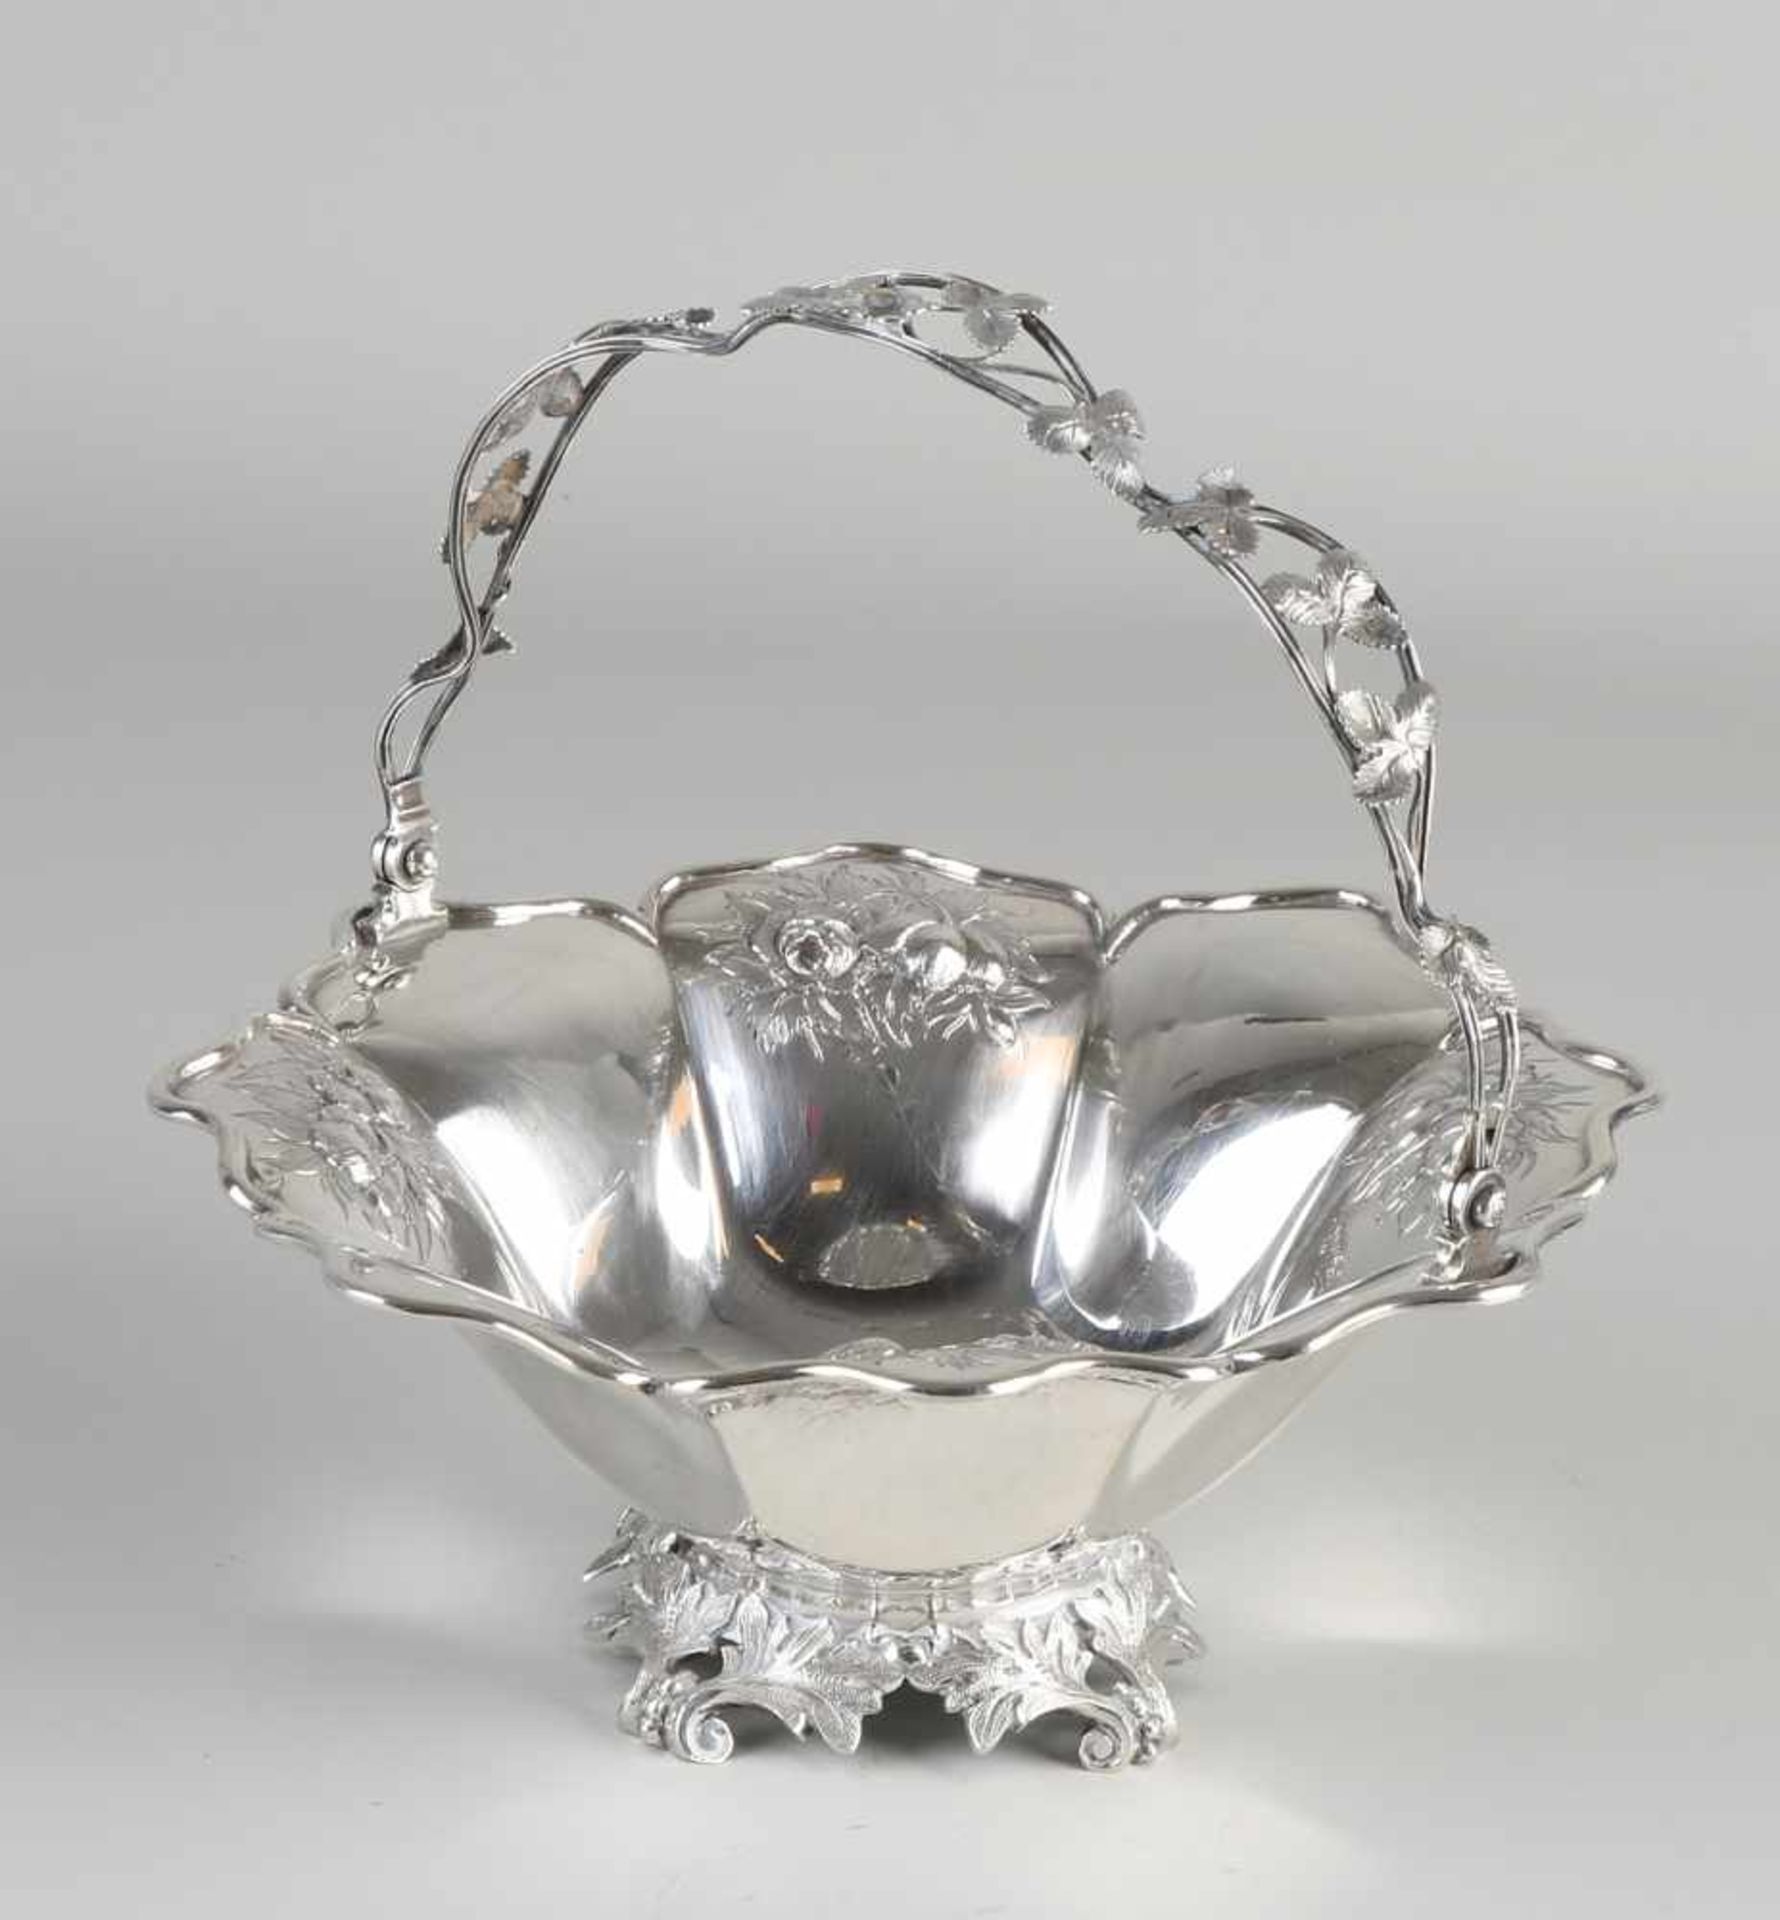 Silberner Bonbonkorb, 934/000, achteckiges Modell mit Blumendekor mit klammerförmiger Kante und